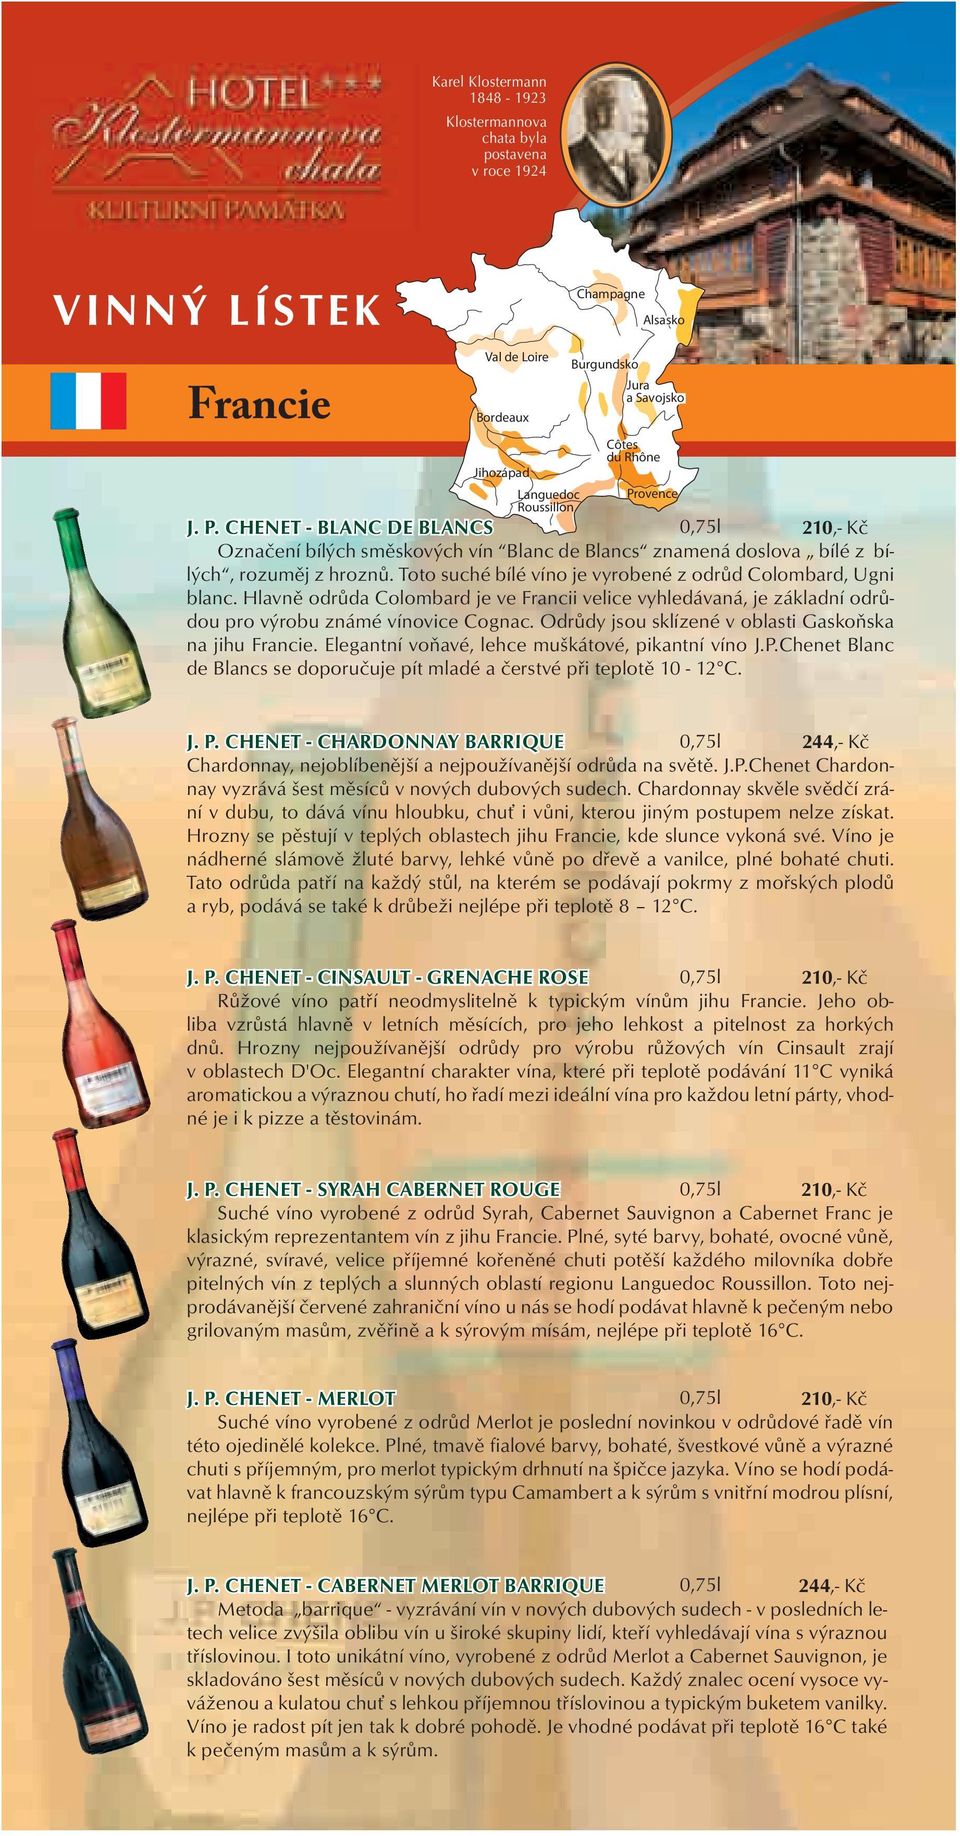 Toto suché bílé víno je vyrobené z odrůd Colombard, Ugni blanc. Hlavně odrůda Colombard je ve Francii velice vyhledávaná, je základní odrůdou pro výrobu známé vínovice Cognac.